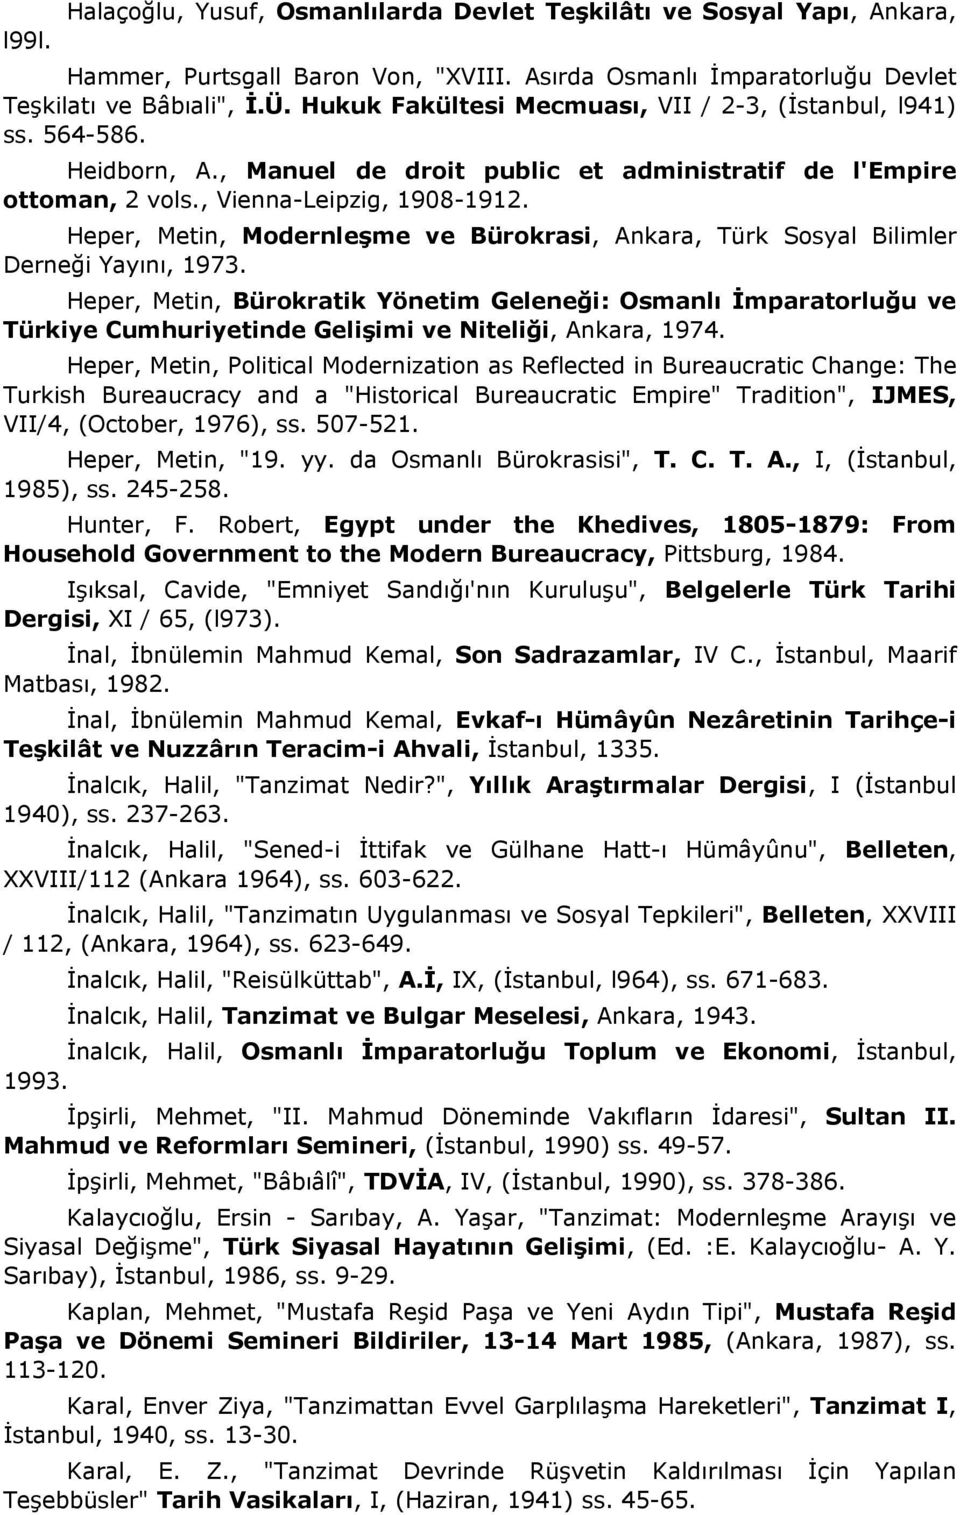 Heper, Metin, Modernleşme ve Bürokrasi, Ankara, Türk Sosyal Bilimler Derneği Yayını, 1973.